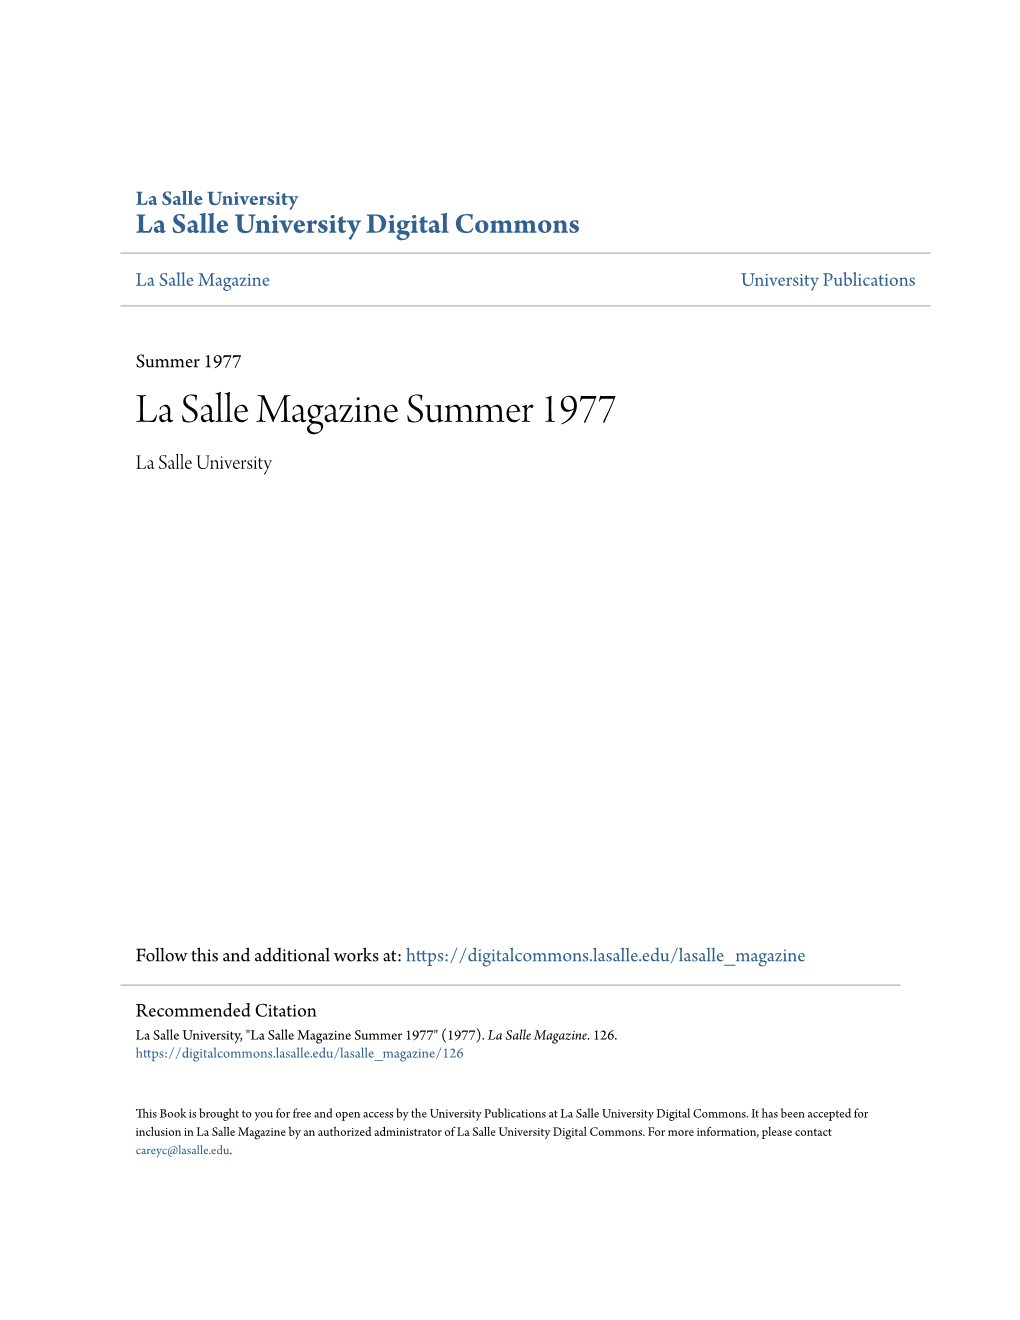 La Salle Magazine Summer 1977 La Salle University